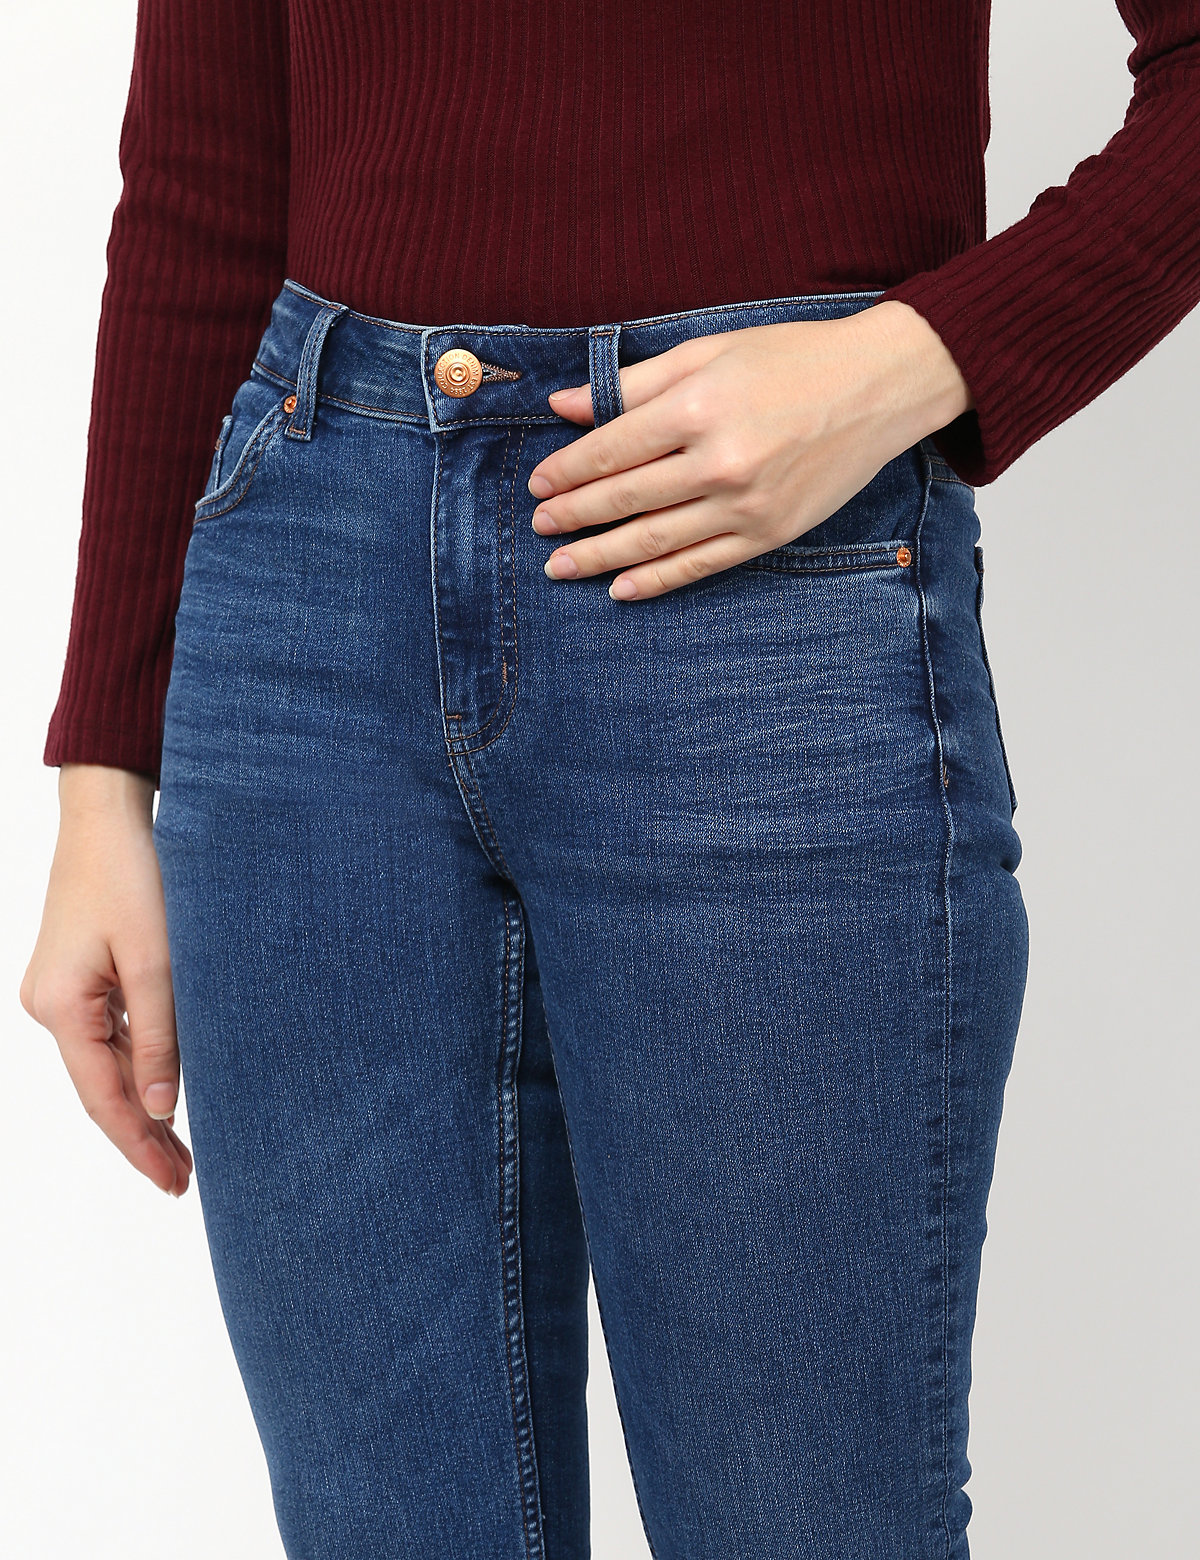 Cotton Mix Plain Slim Fit Jeans